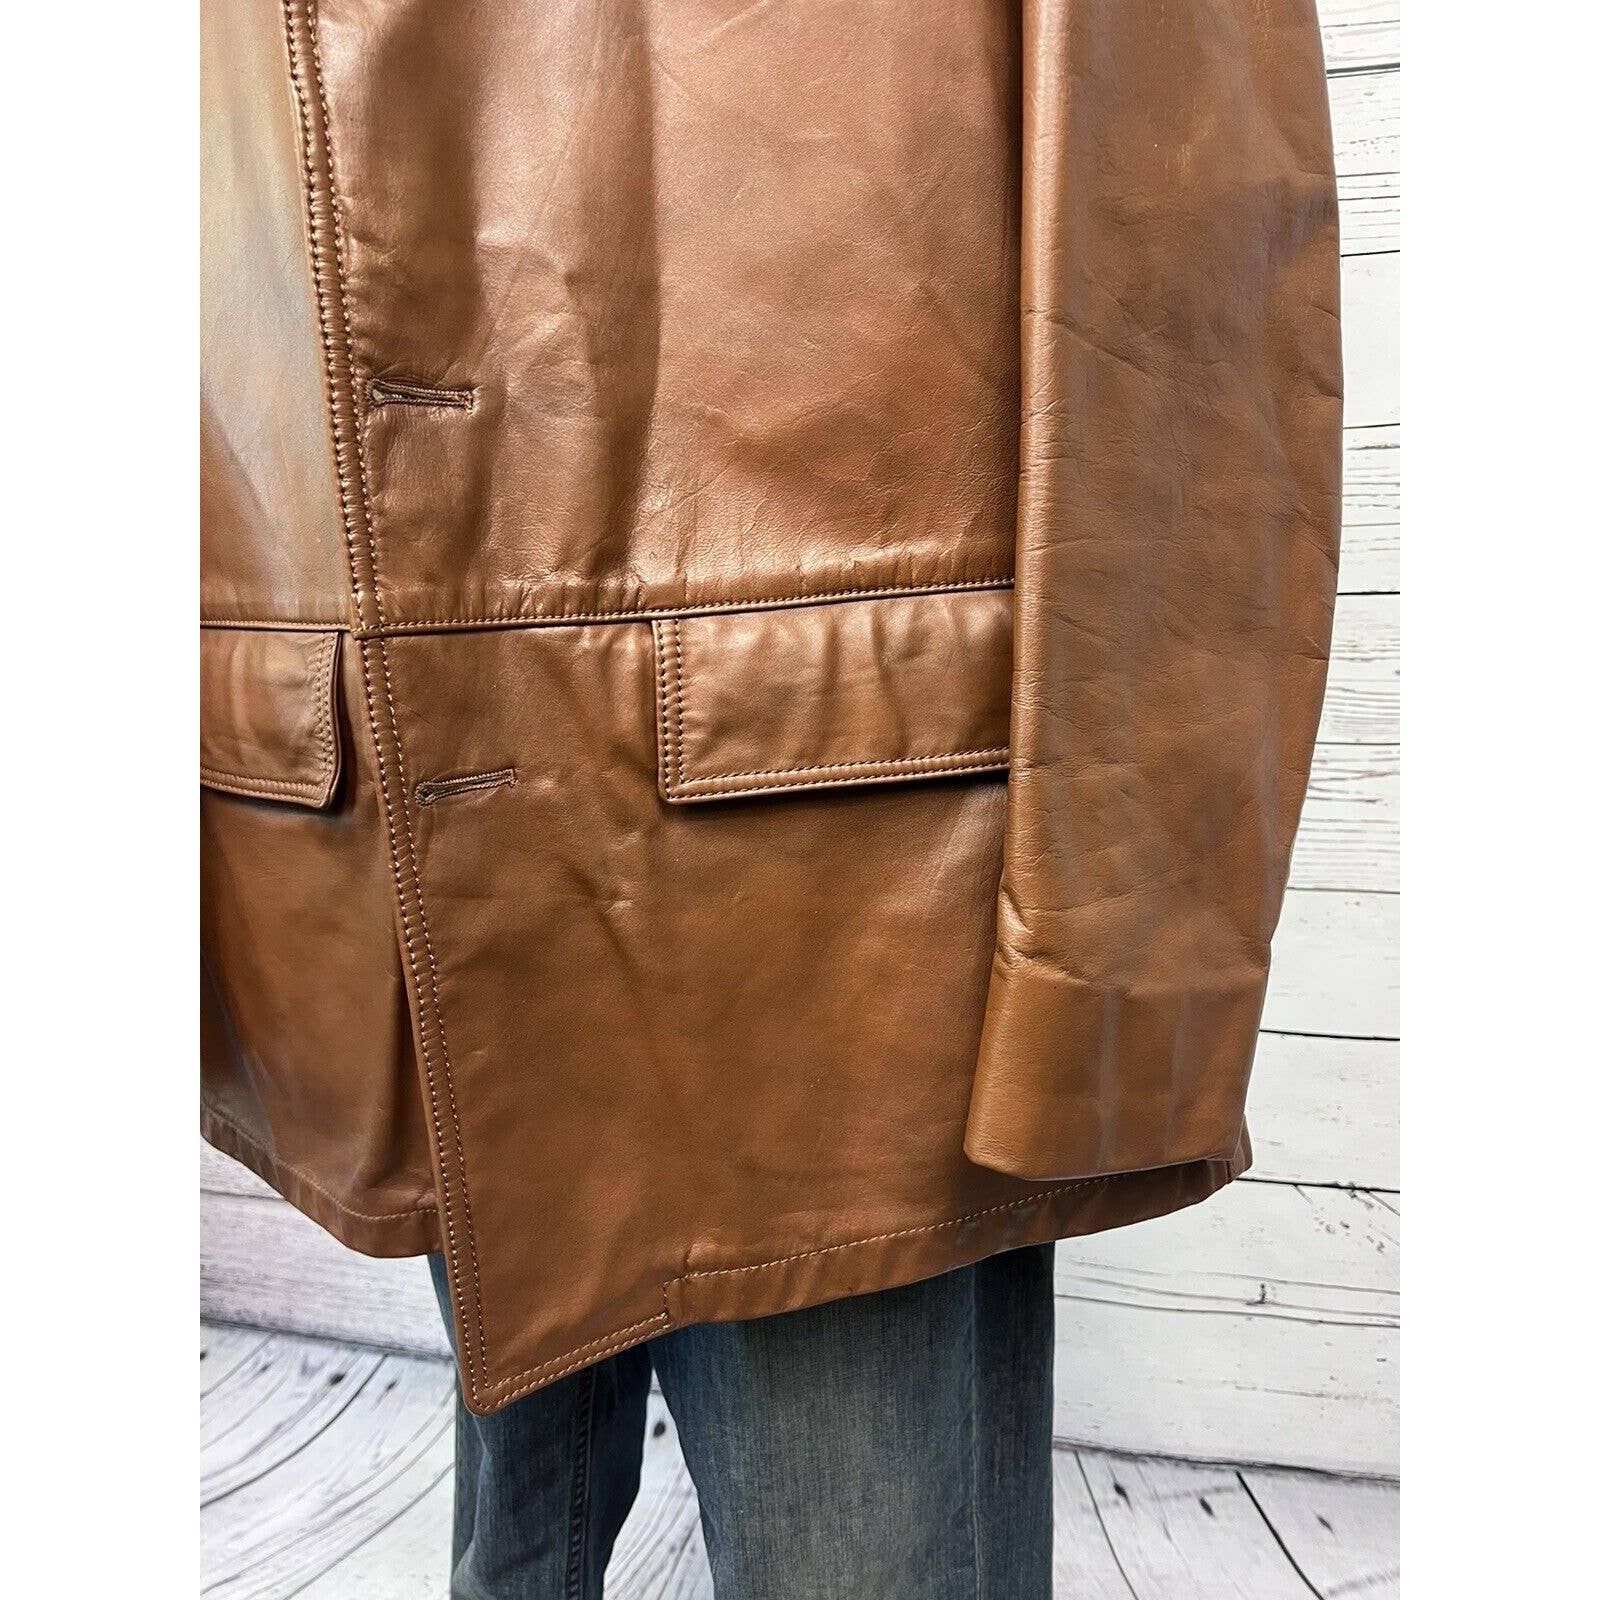 Vintage 70s Leather Blazer Coat Jacket Men's Size 44 Large Caramel Brown Mobster